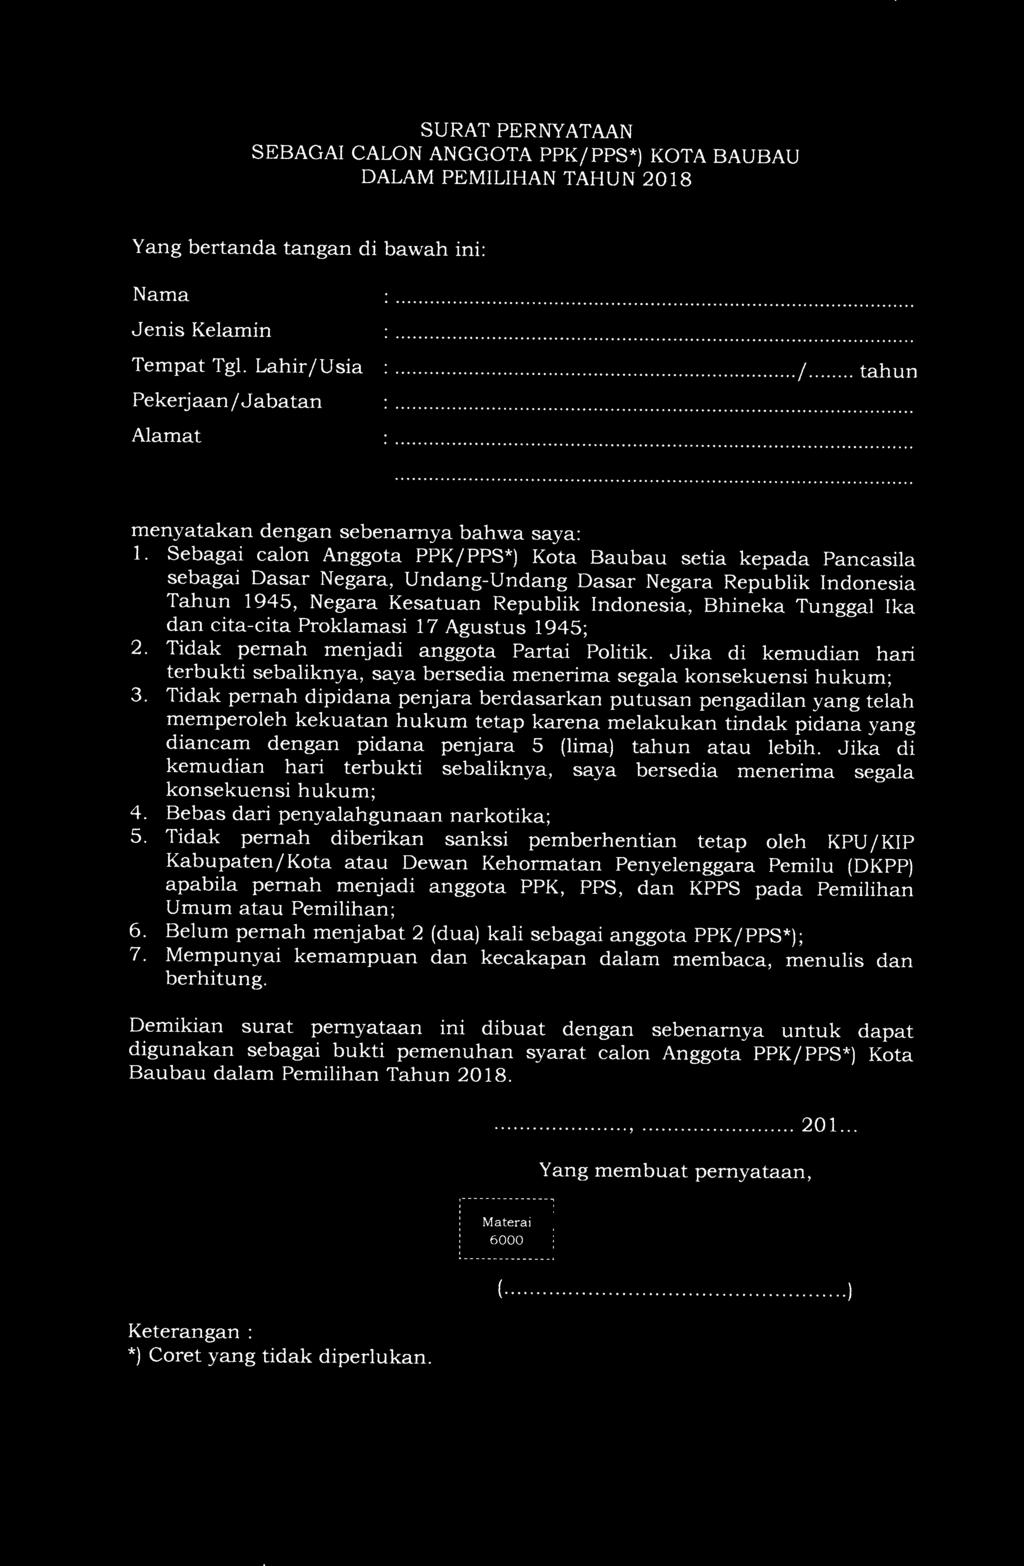 Sebagai calon Anggota PPK/PPS*) Kota Baubau setia kepada Pancasila sebagai Dasar Negara, Undang-Undang Dasar Negara Republik Indonesia Tahun 1945, Negara Kesatuan Republik Indonesia, Bhineka Tunggal